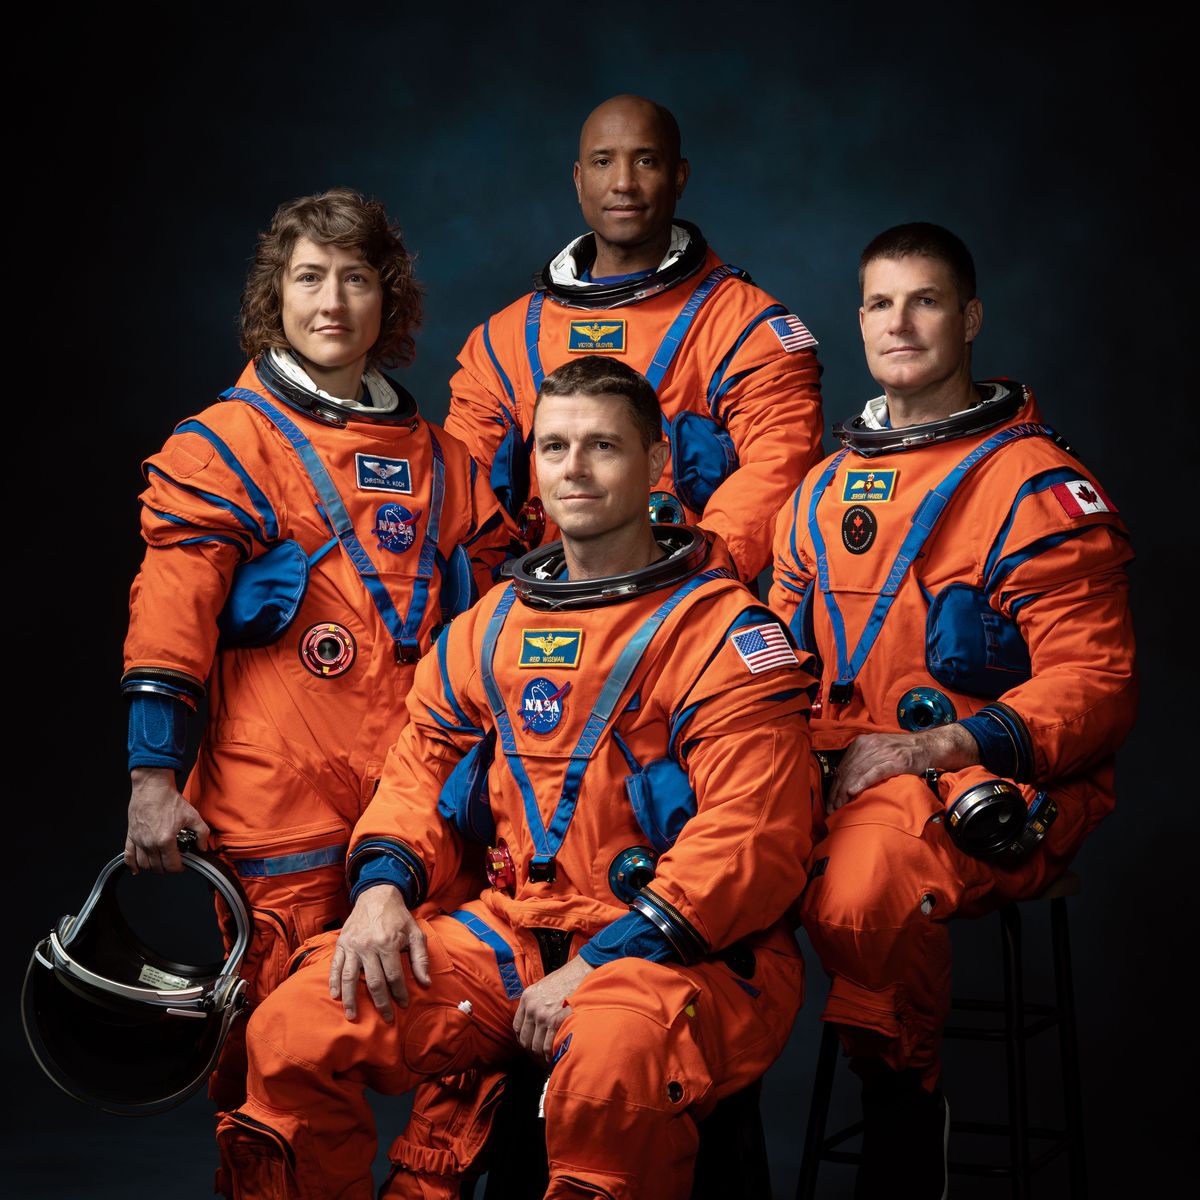 Kosmonauci, którzy wyruszą w misję Artemis II